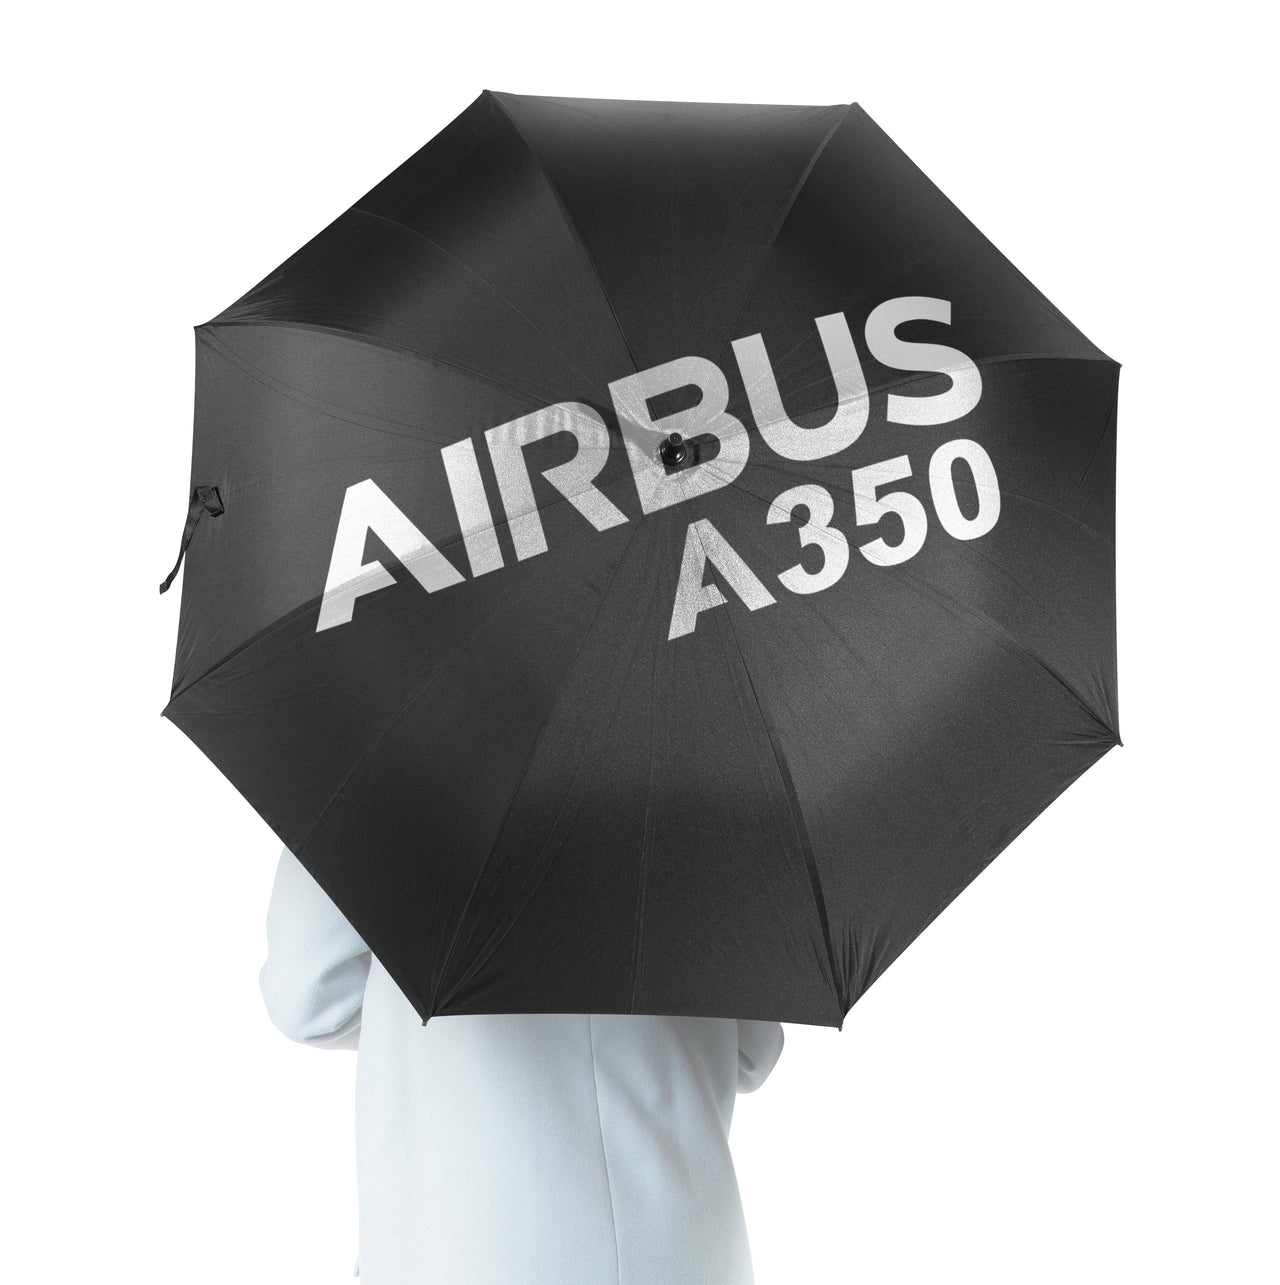 Airbus A350 & Text Designed Umbrella